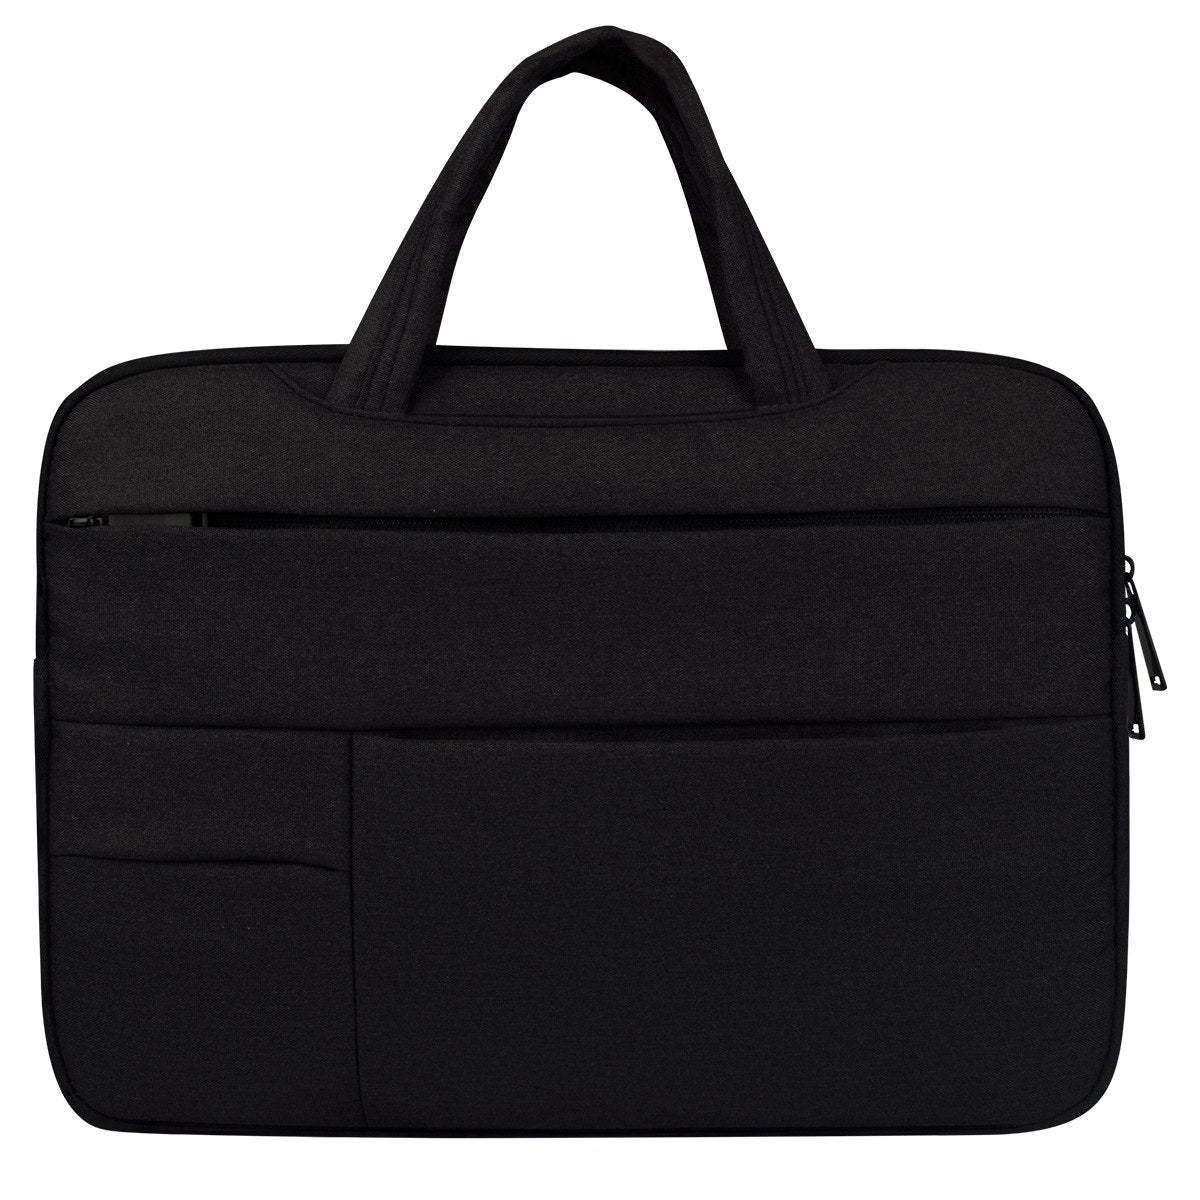 11 12 13 14 15.4 15.6 Notebook Laptop Sleeve Bag Handbag Pouch Case For Acer Dell HP Asus Lenovo Macbook Xiaomi - ebowsos